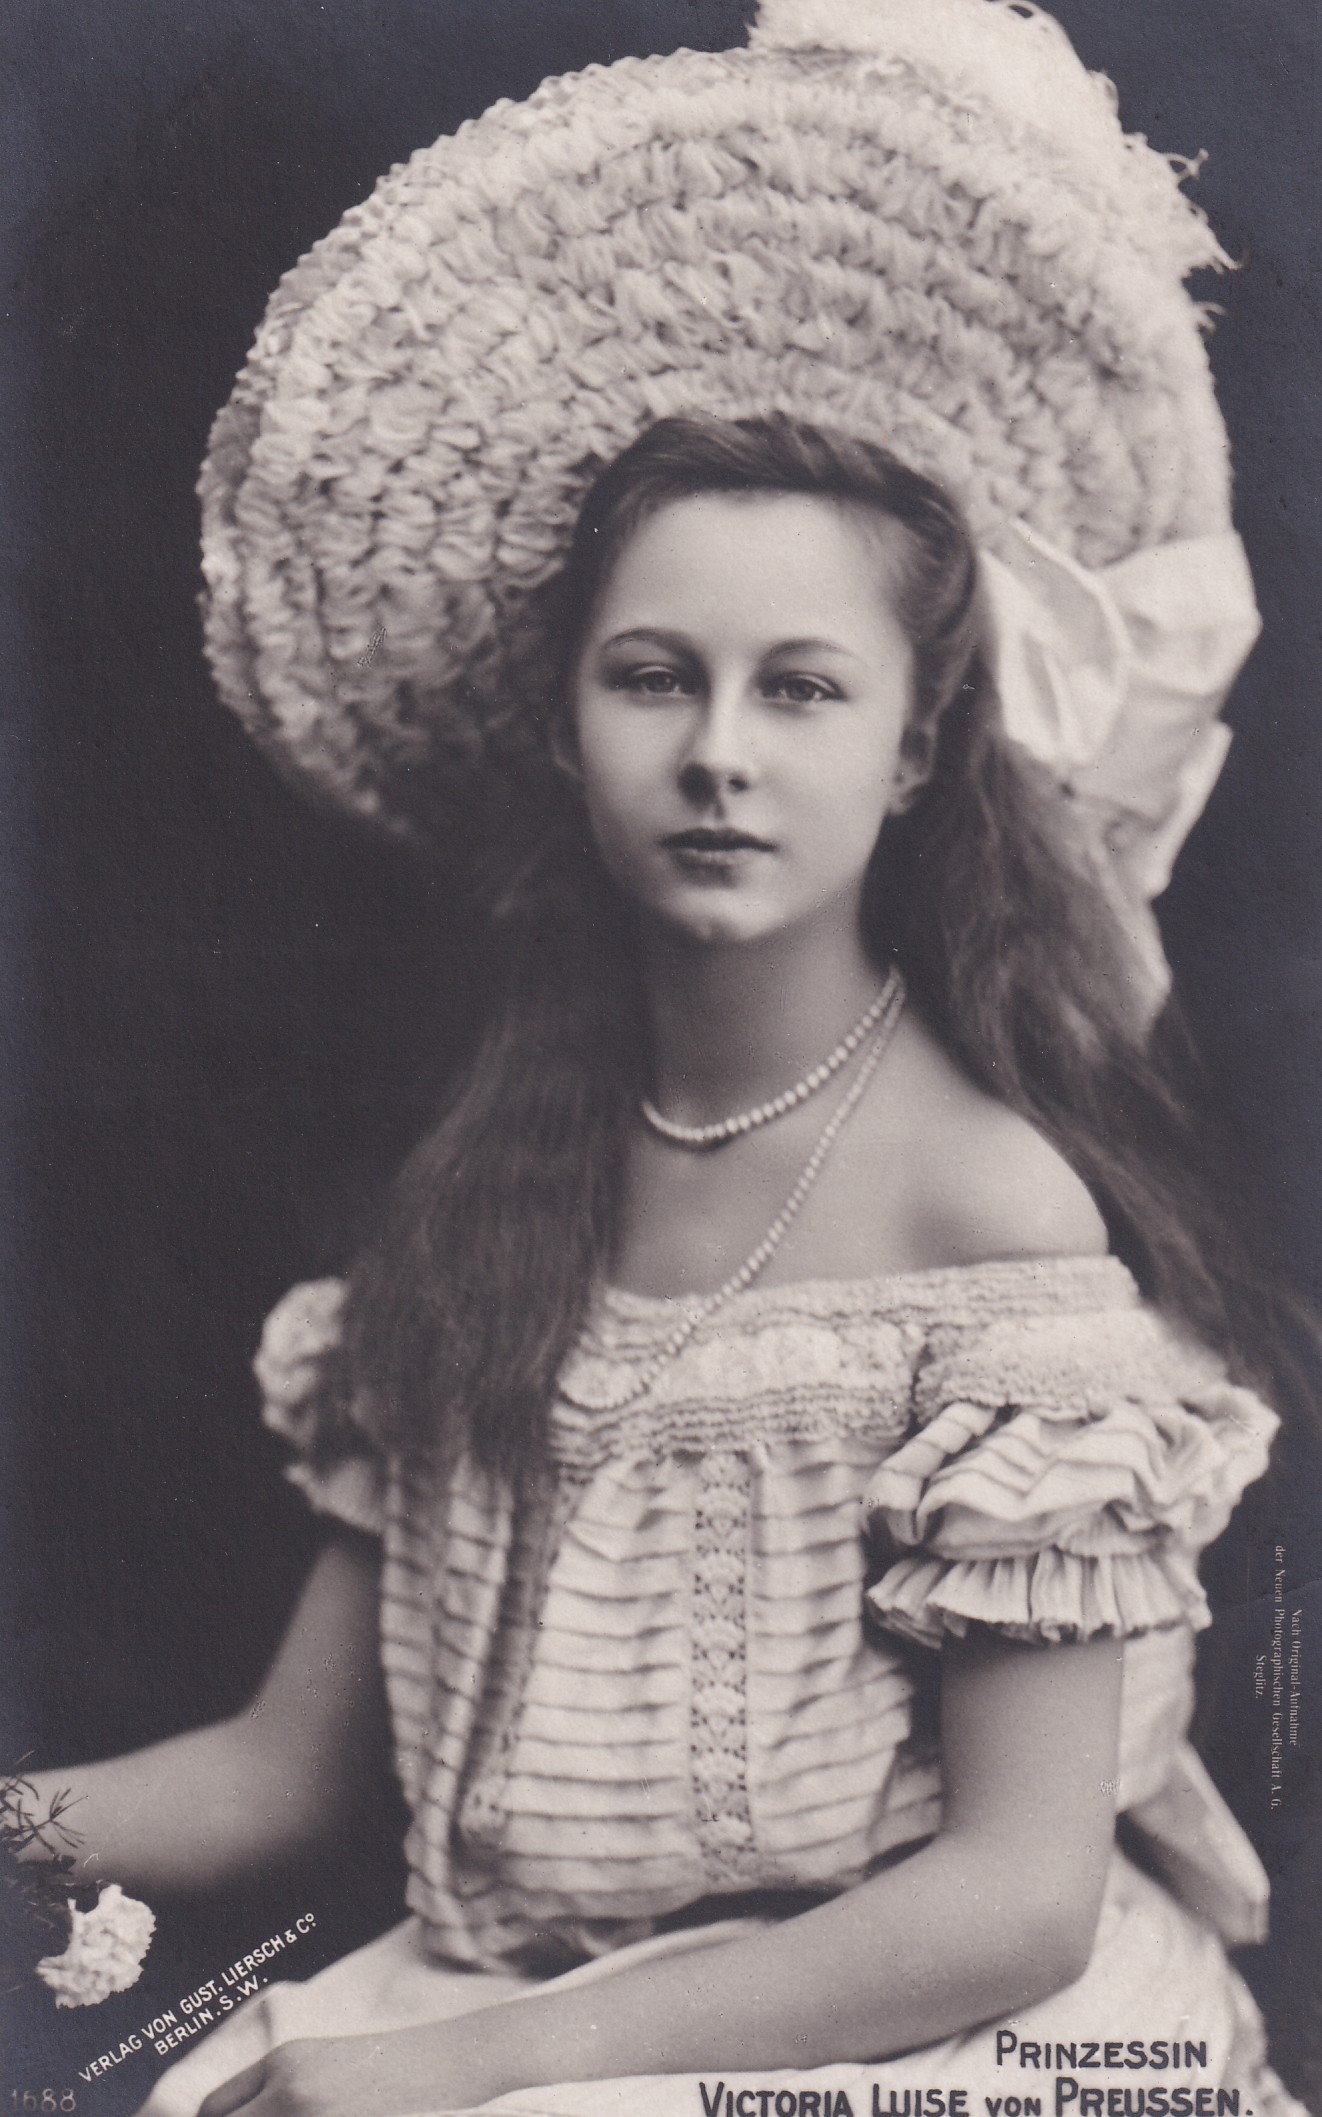 Bildpostkarte mit Foto der Prinzessin Victoria Luise von Preußen, 1907 (Schloß Wernigerode GmbH RR-F)